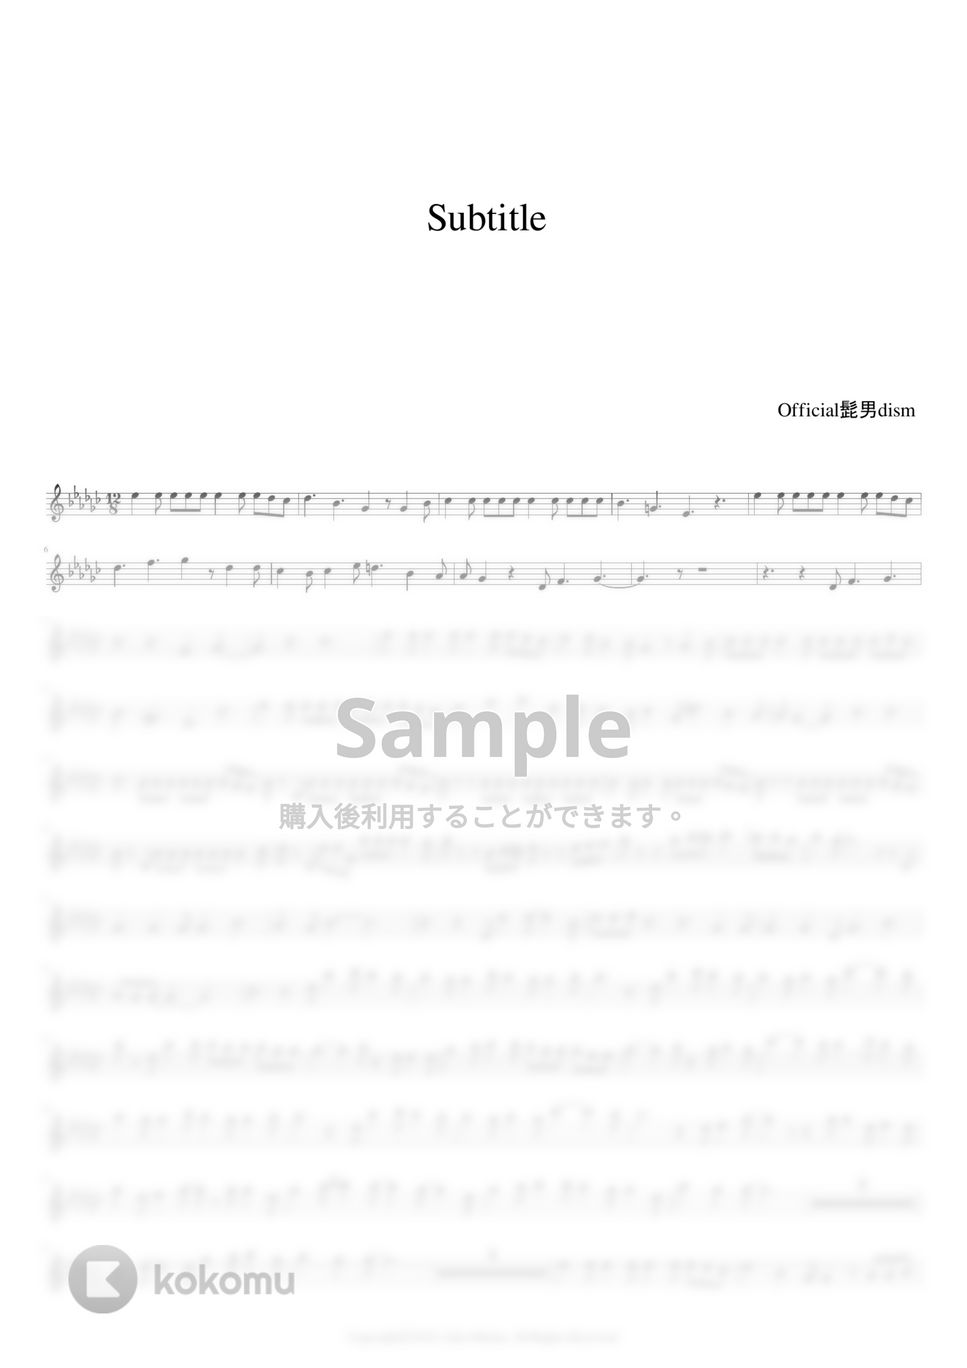 Official髭男dism - Subtitle (フルート用メロディー譜) by もりたあいか